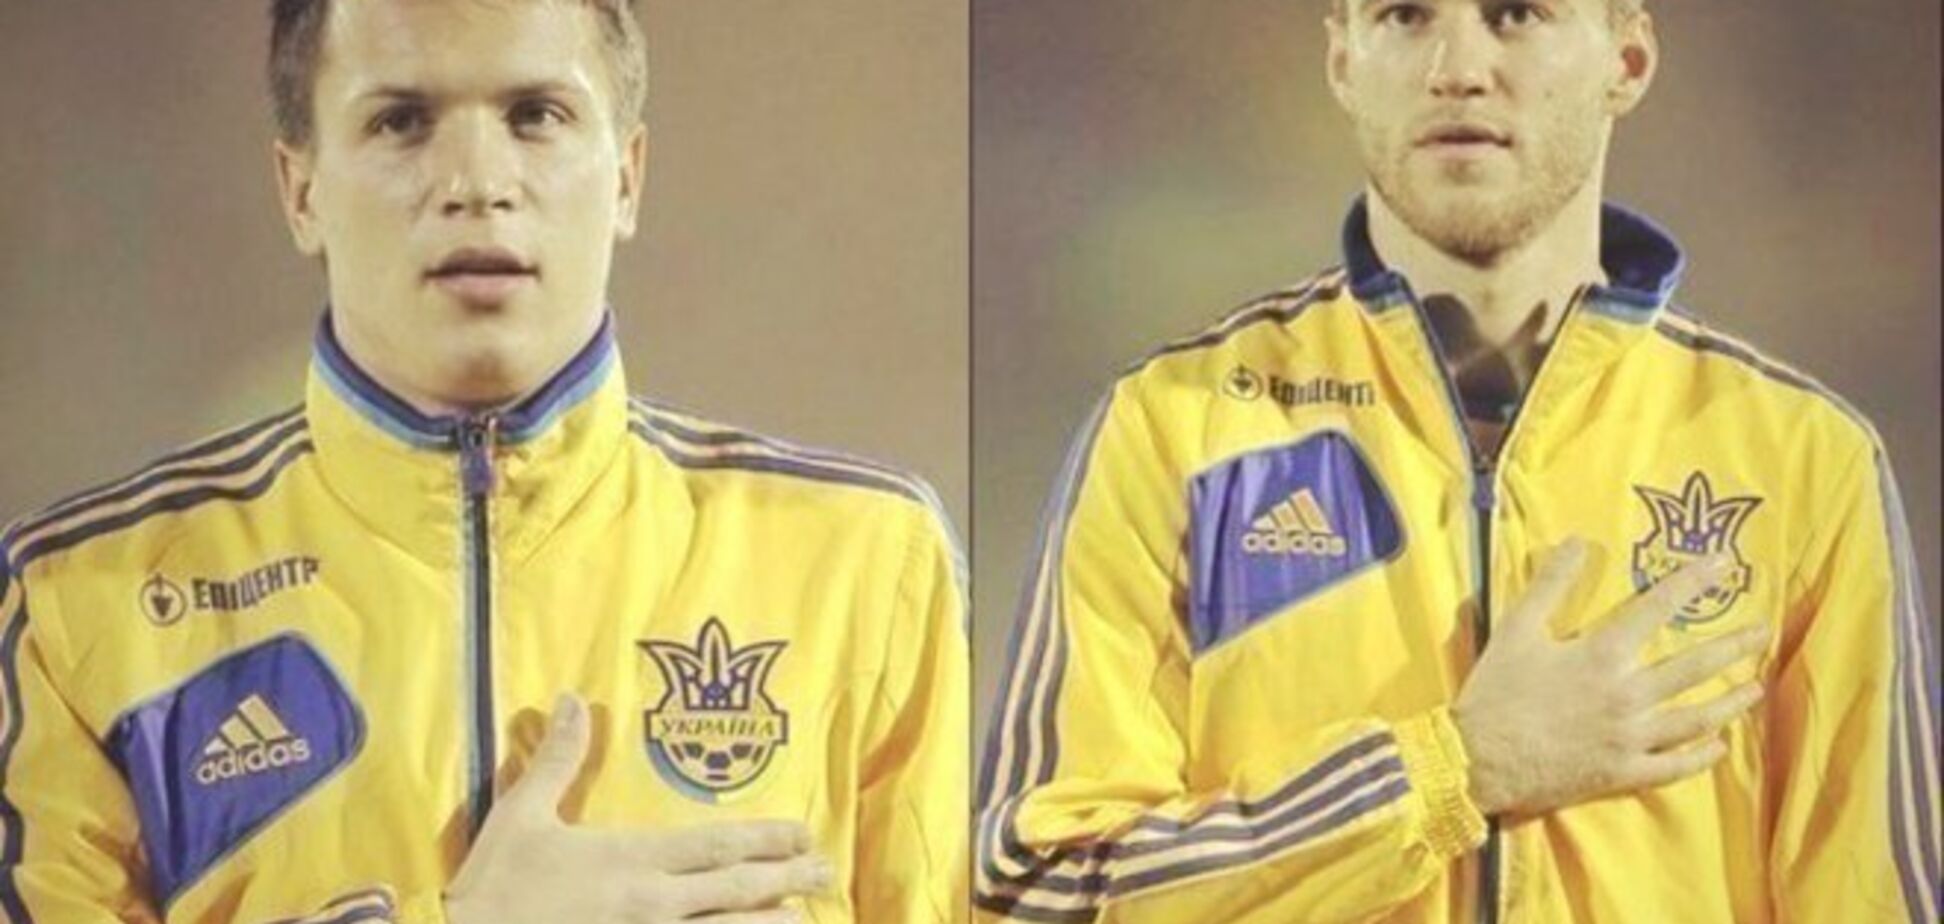 В соцсетях проходит патриотичный флешмоб в поддержку сборной Украины